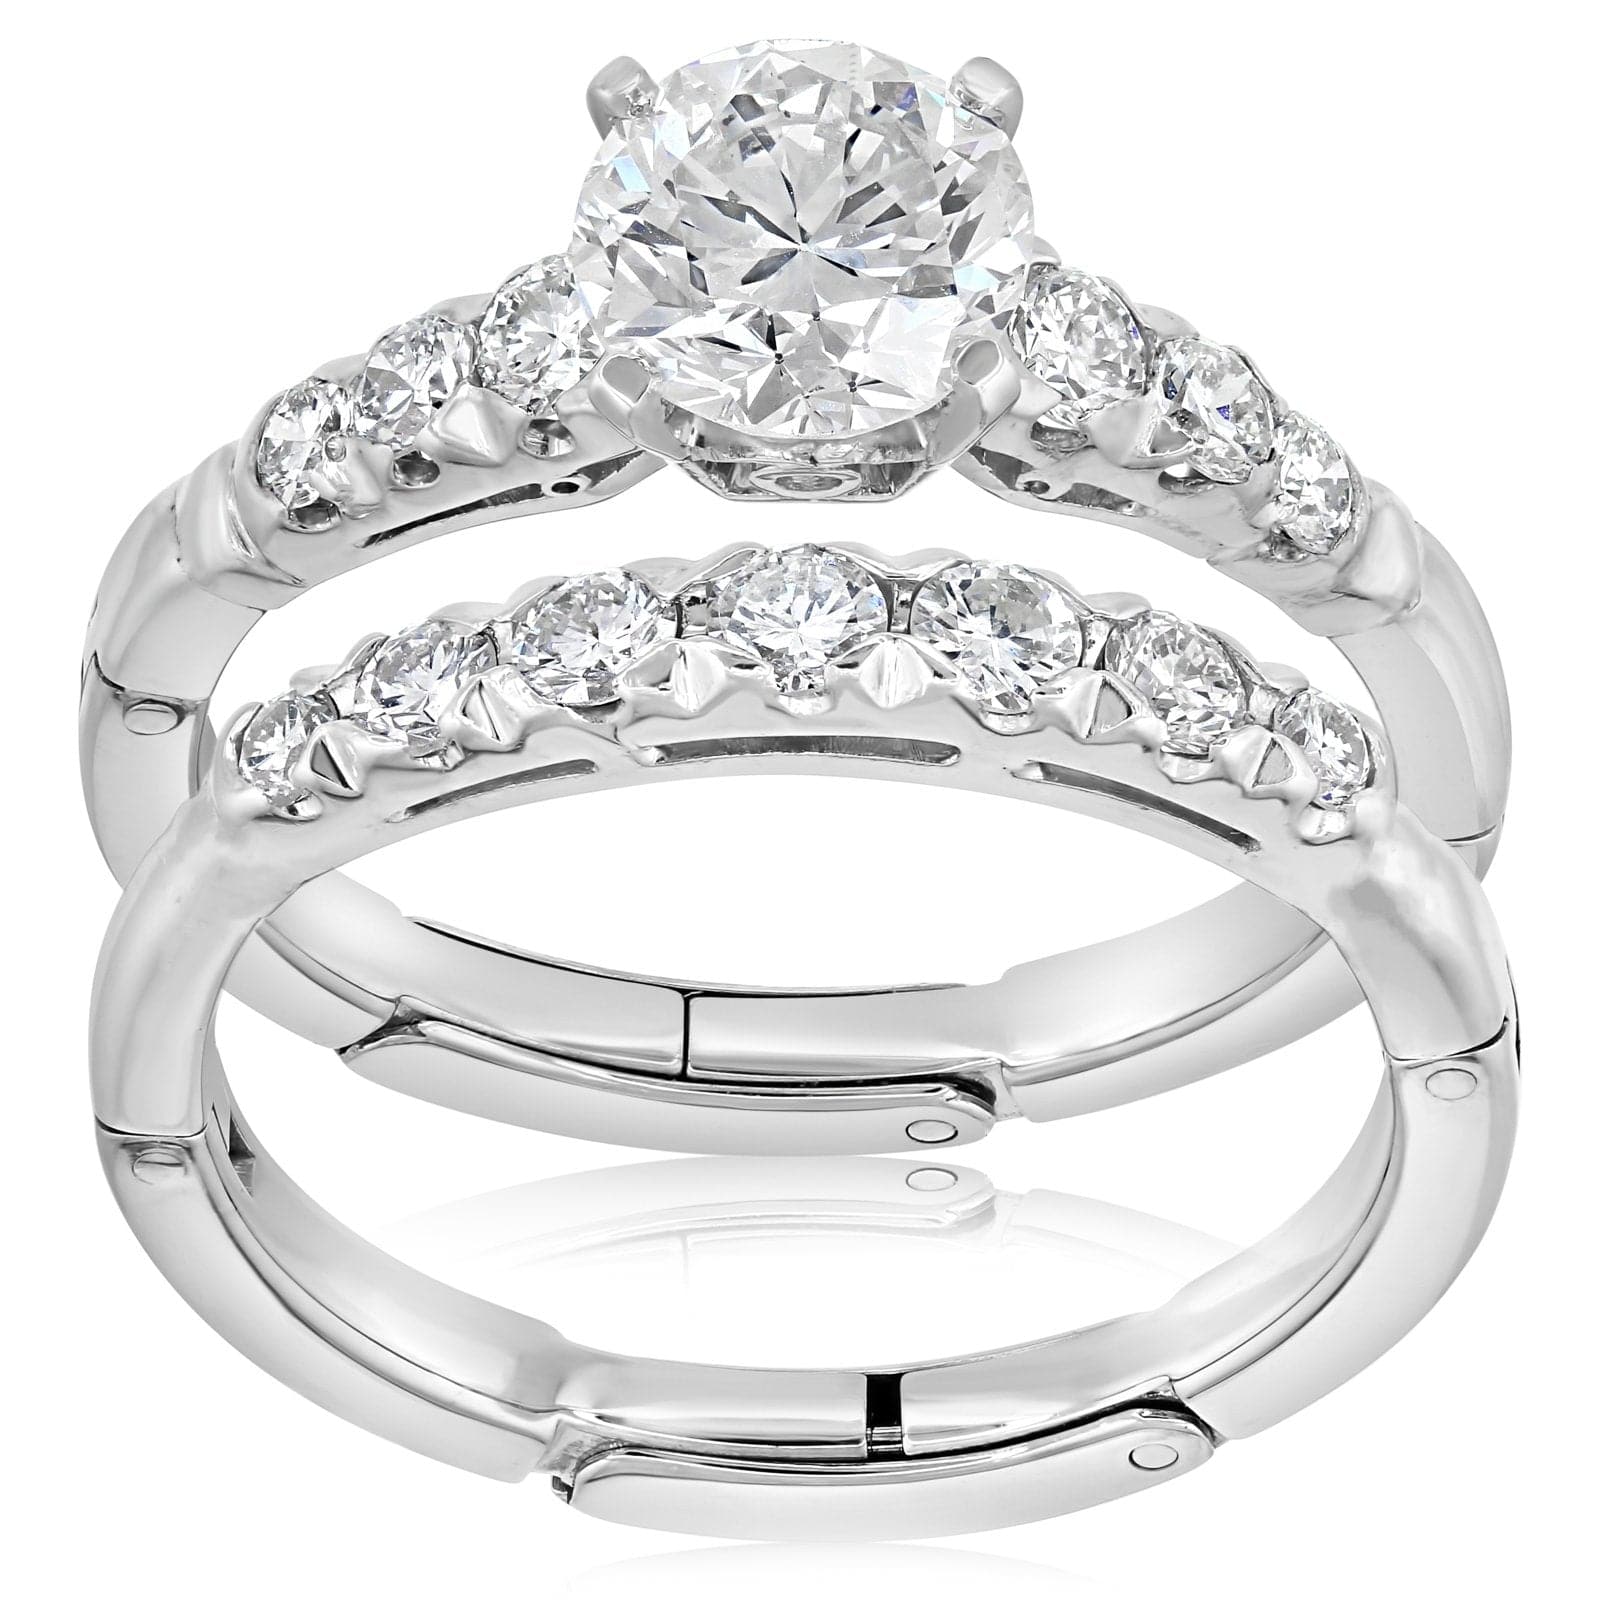 Buy/Send Diamond Cluster Adjustable Ring Online- FNP